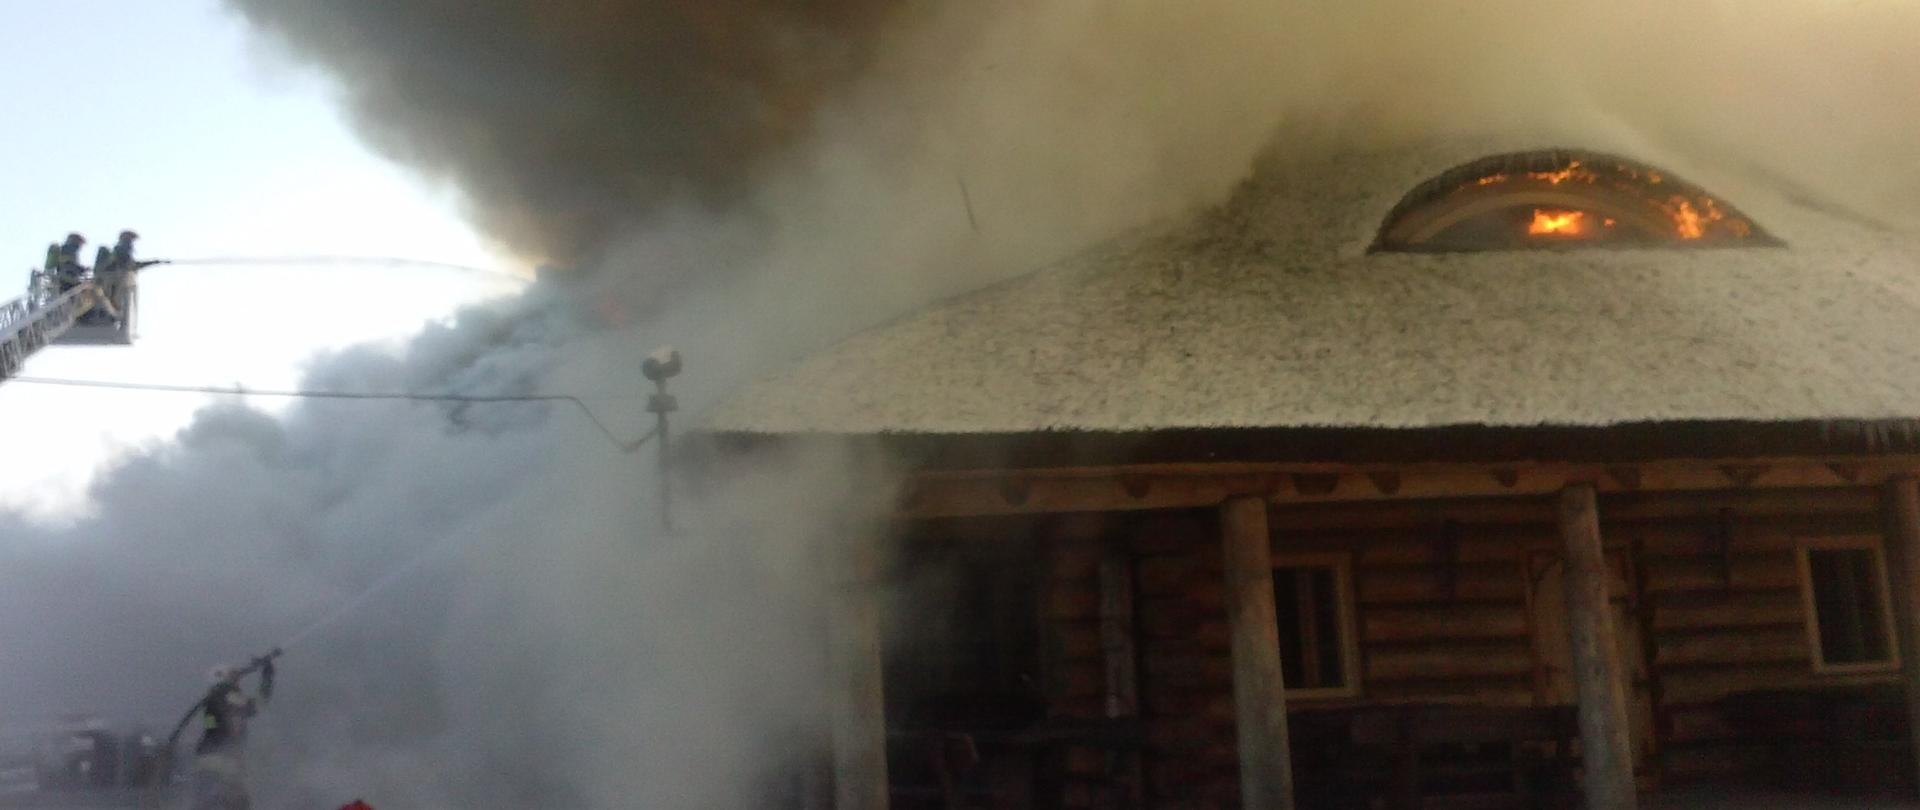 na zdjęciu widać budynek konstrukcji drewnianej objęty pożarem. Widać ogień i dużo dymu